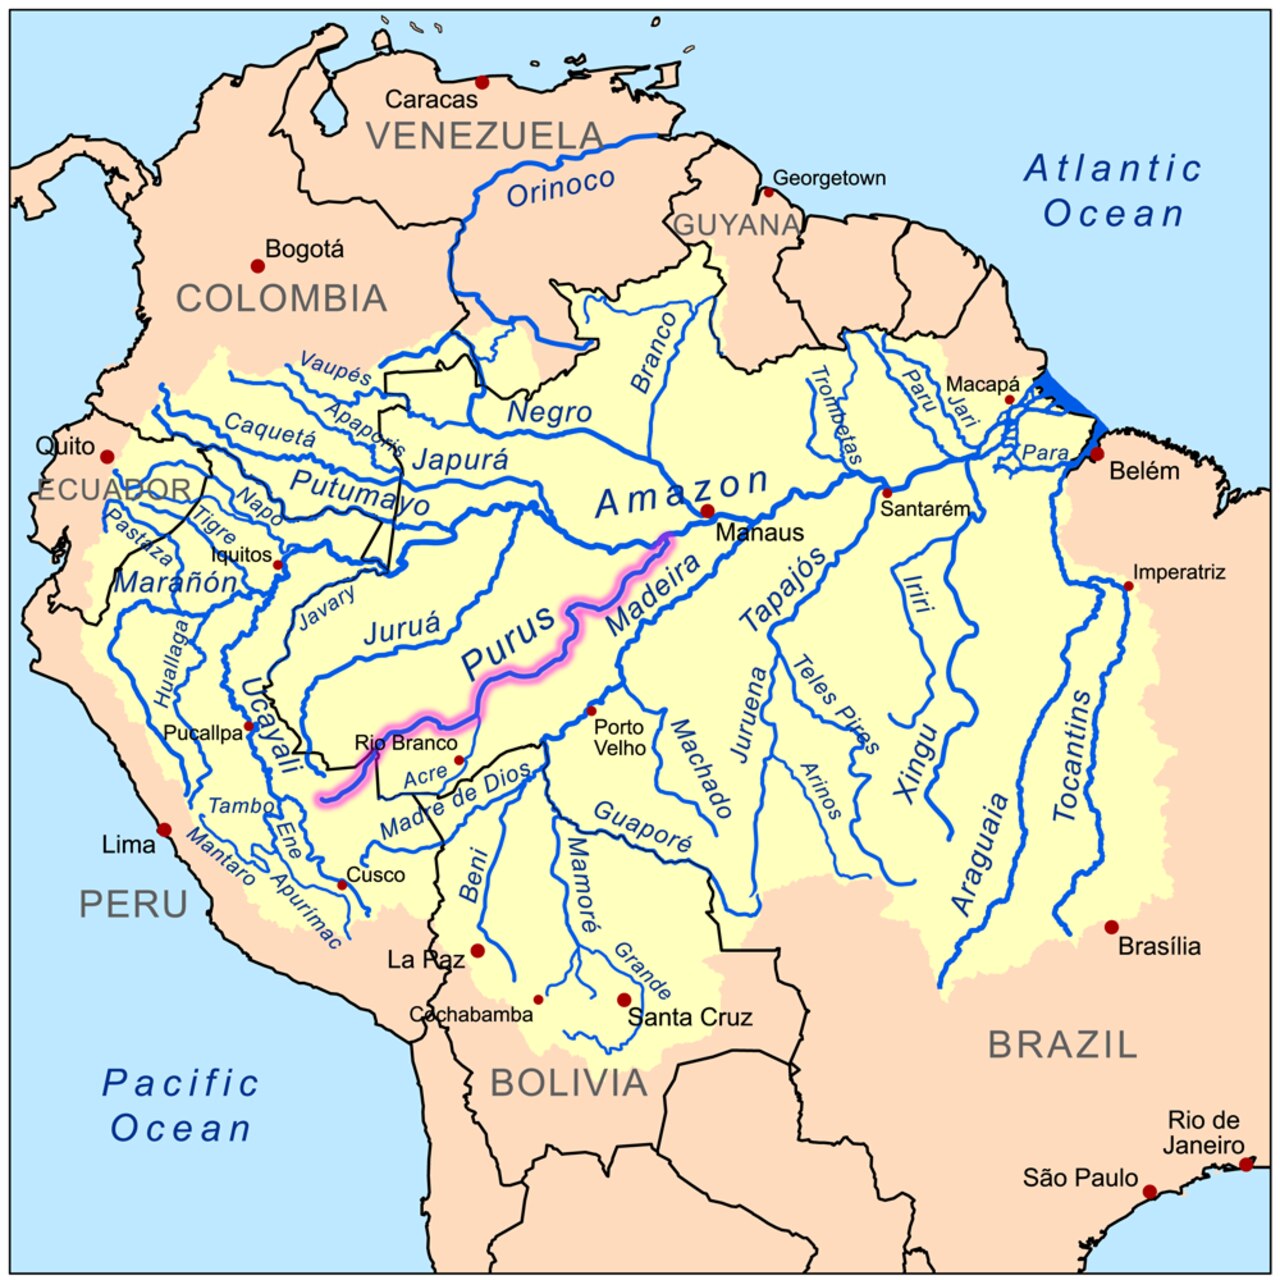 Intelligenza Artificiale: il Purus è un imponente fiume dell'America meridionale, il quale scorre per ben 3.211 chilometri verso nord-est per confluire infine nel Rio delle Amazzoni